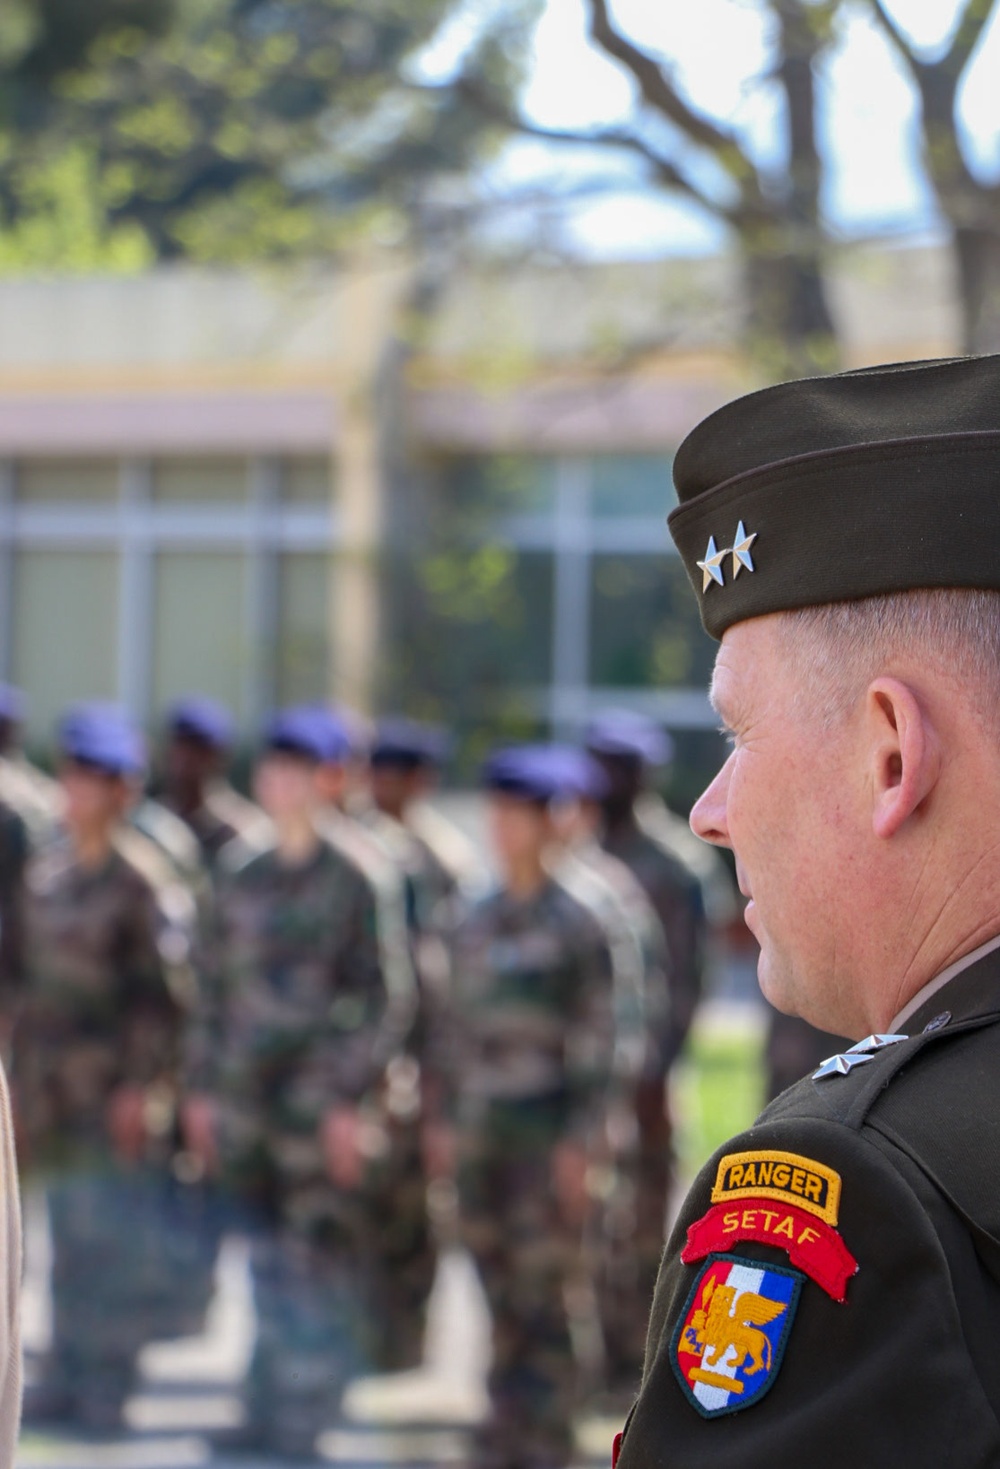 U.S. Army Maj. Gen. Todd Wasmund awarded French Legion of Honor